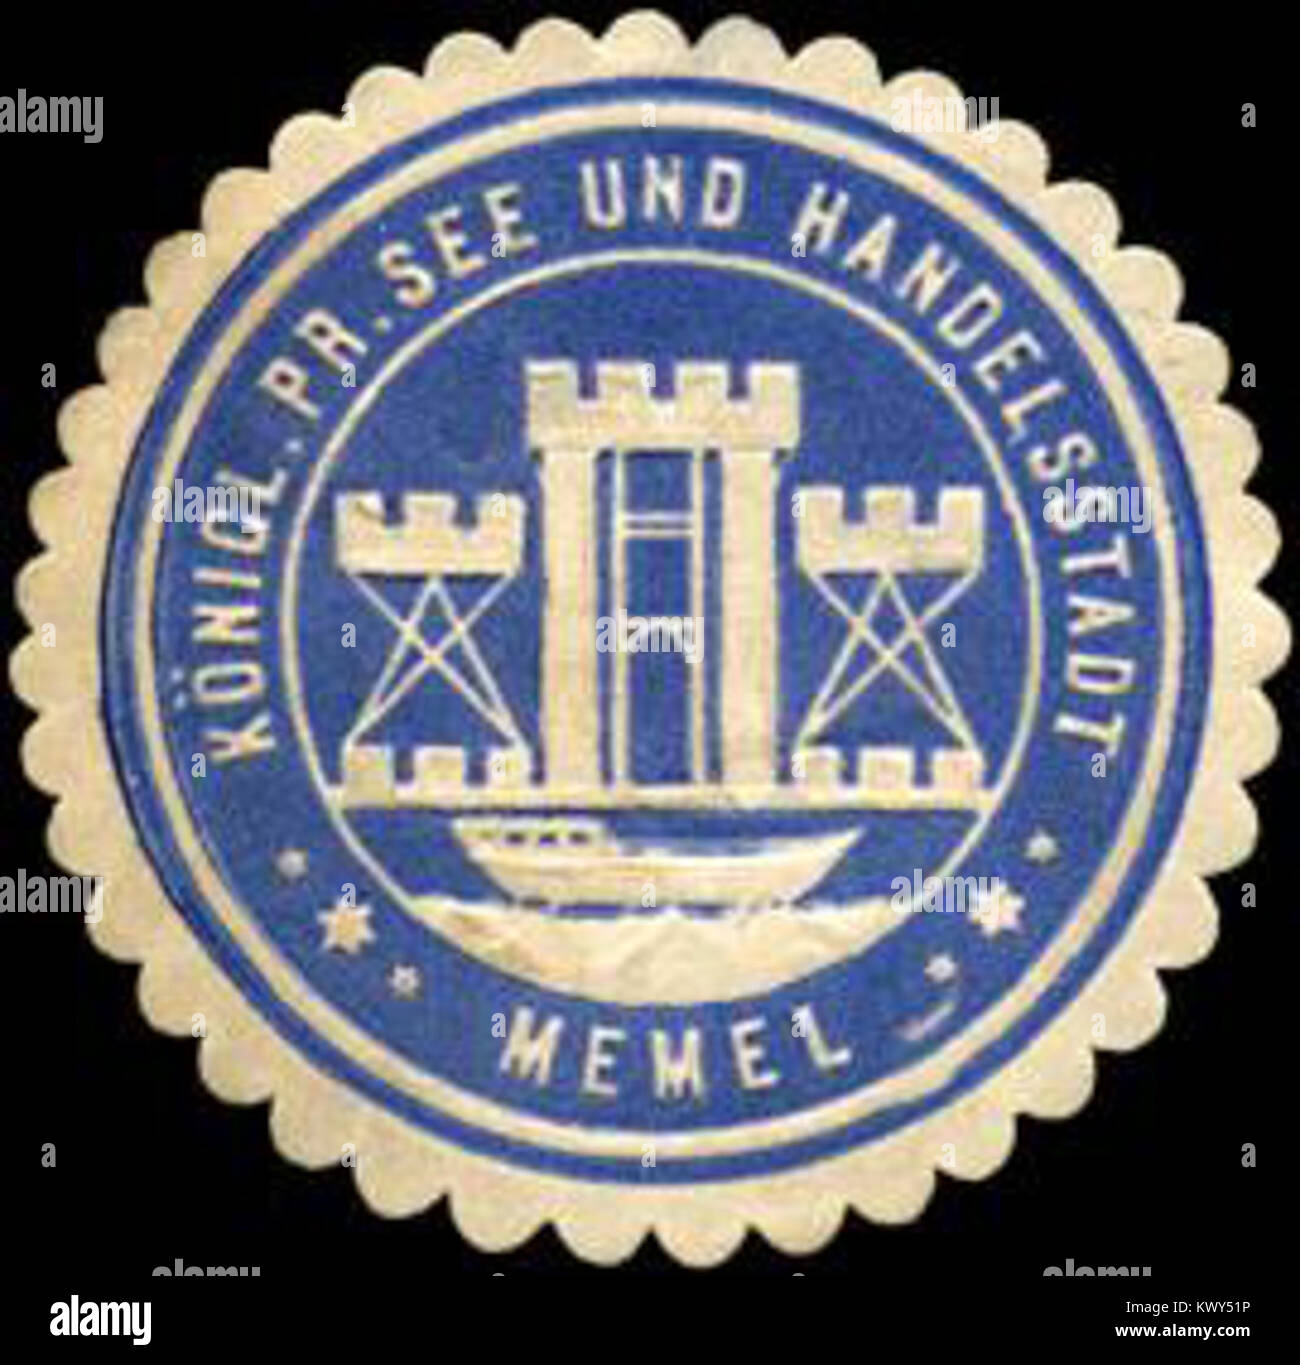 Siegelmarke Königlich Preussische See und Handelsstadt - Memel W0213920 Stock Photo